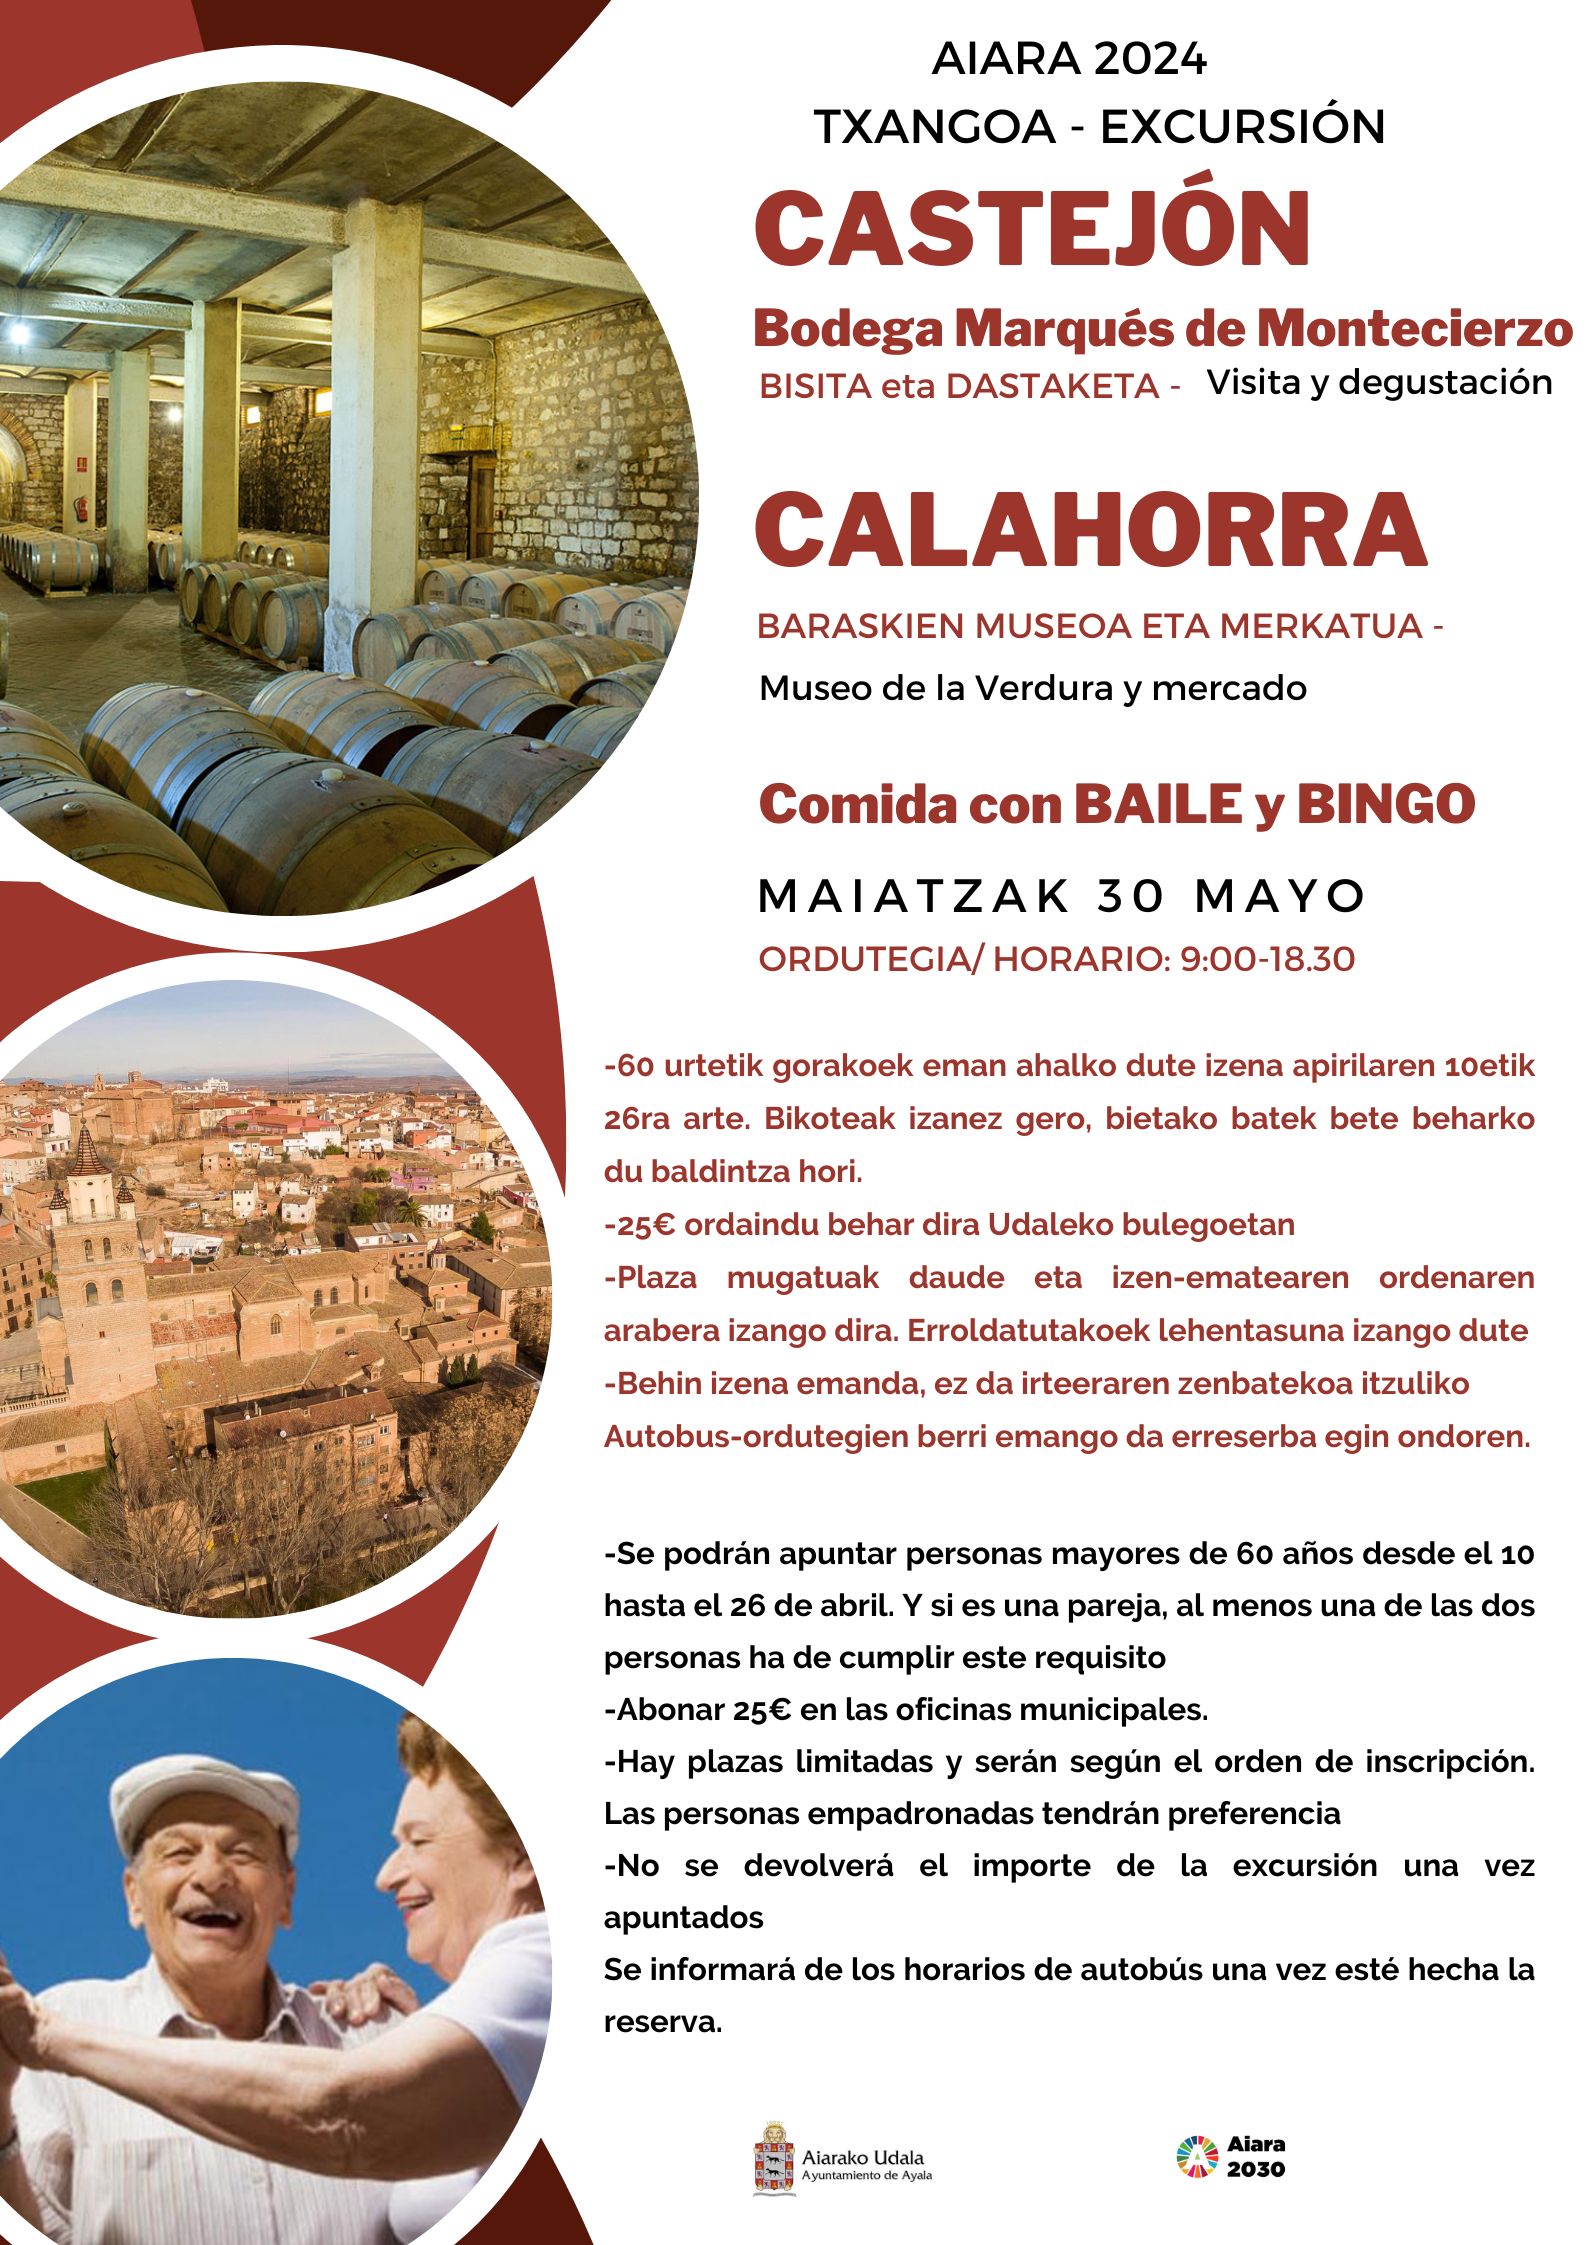 Excursión - Castejón - Calahorra